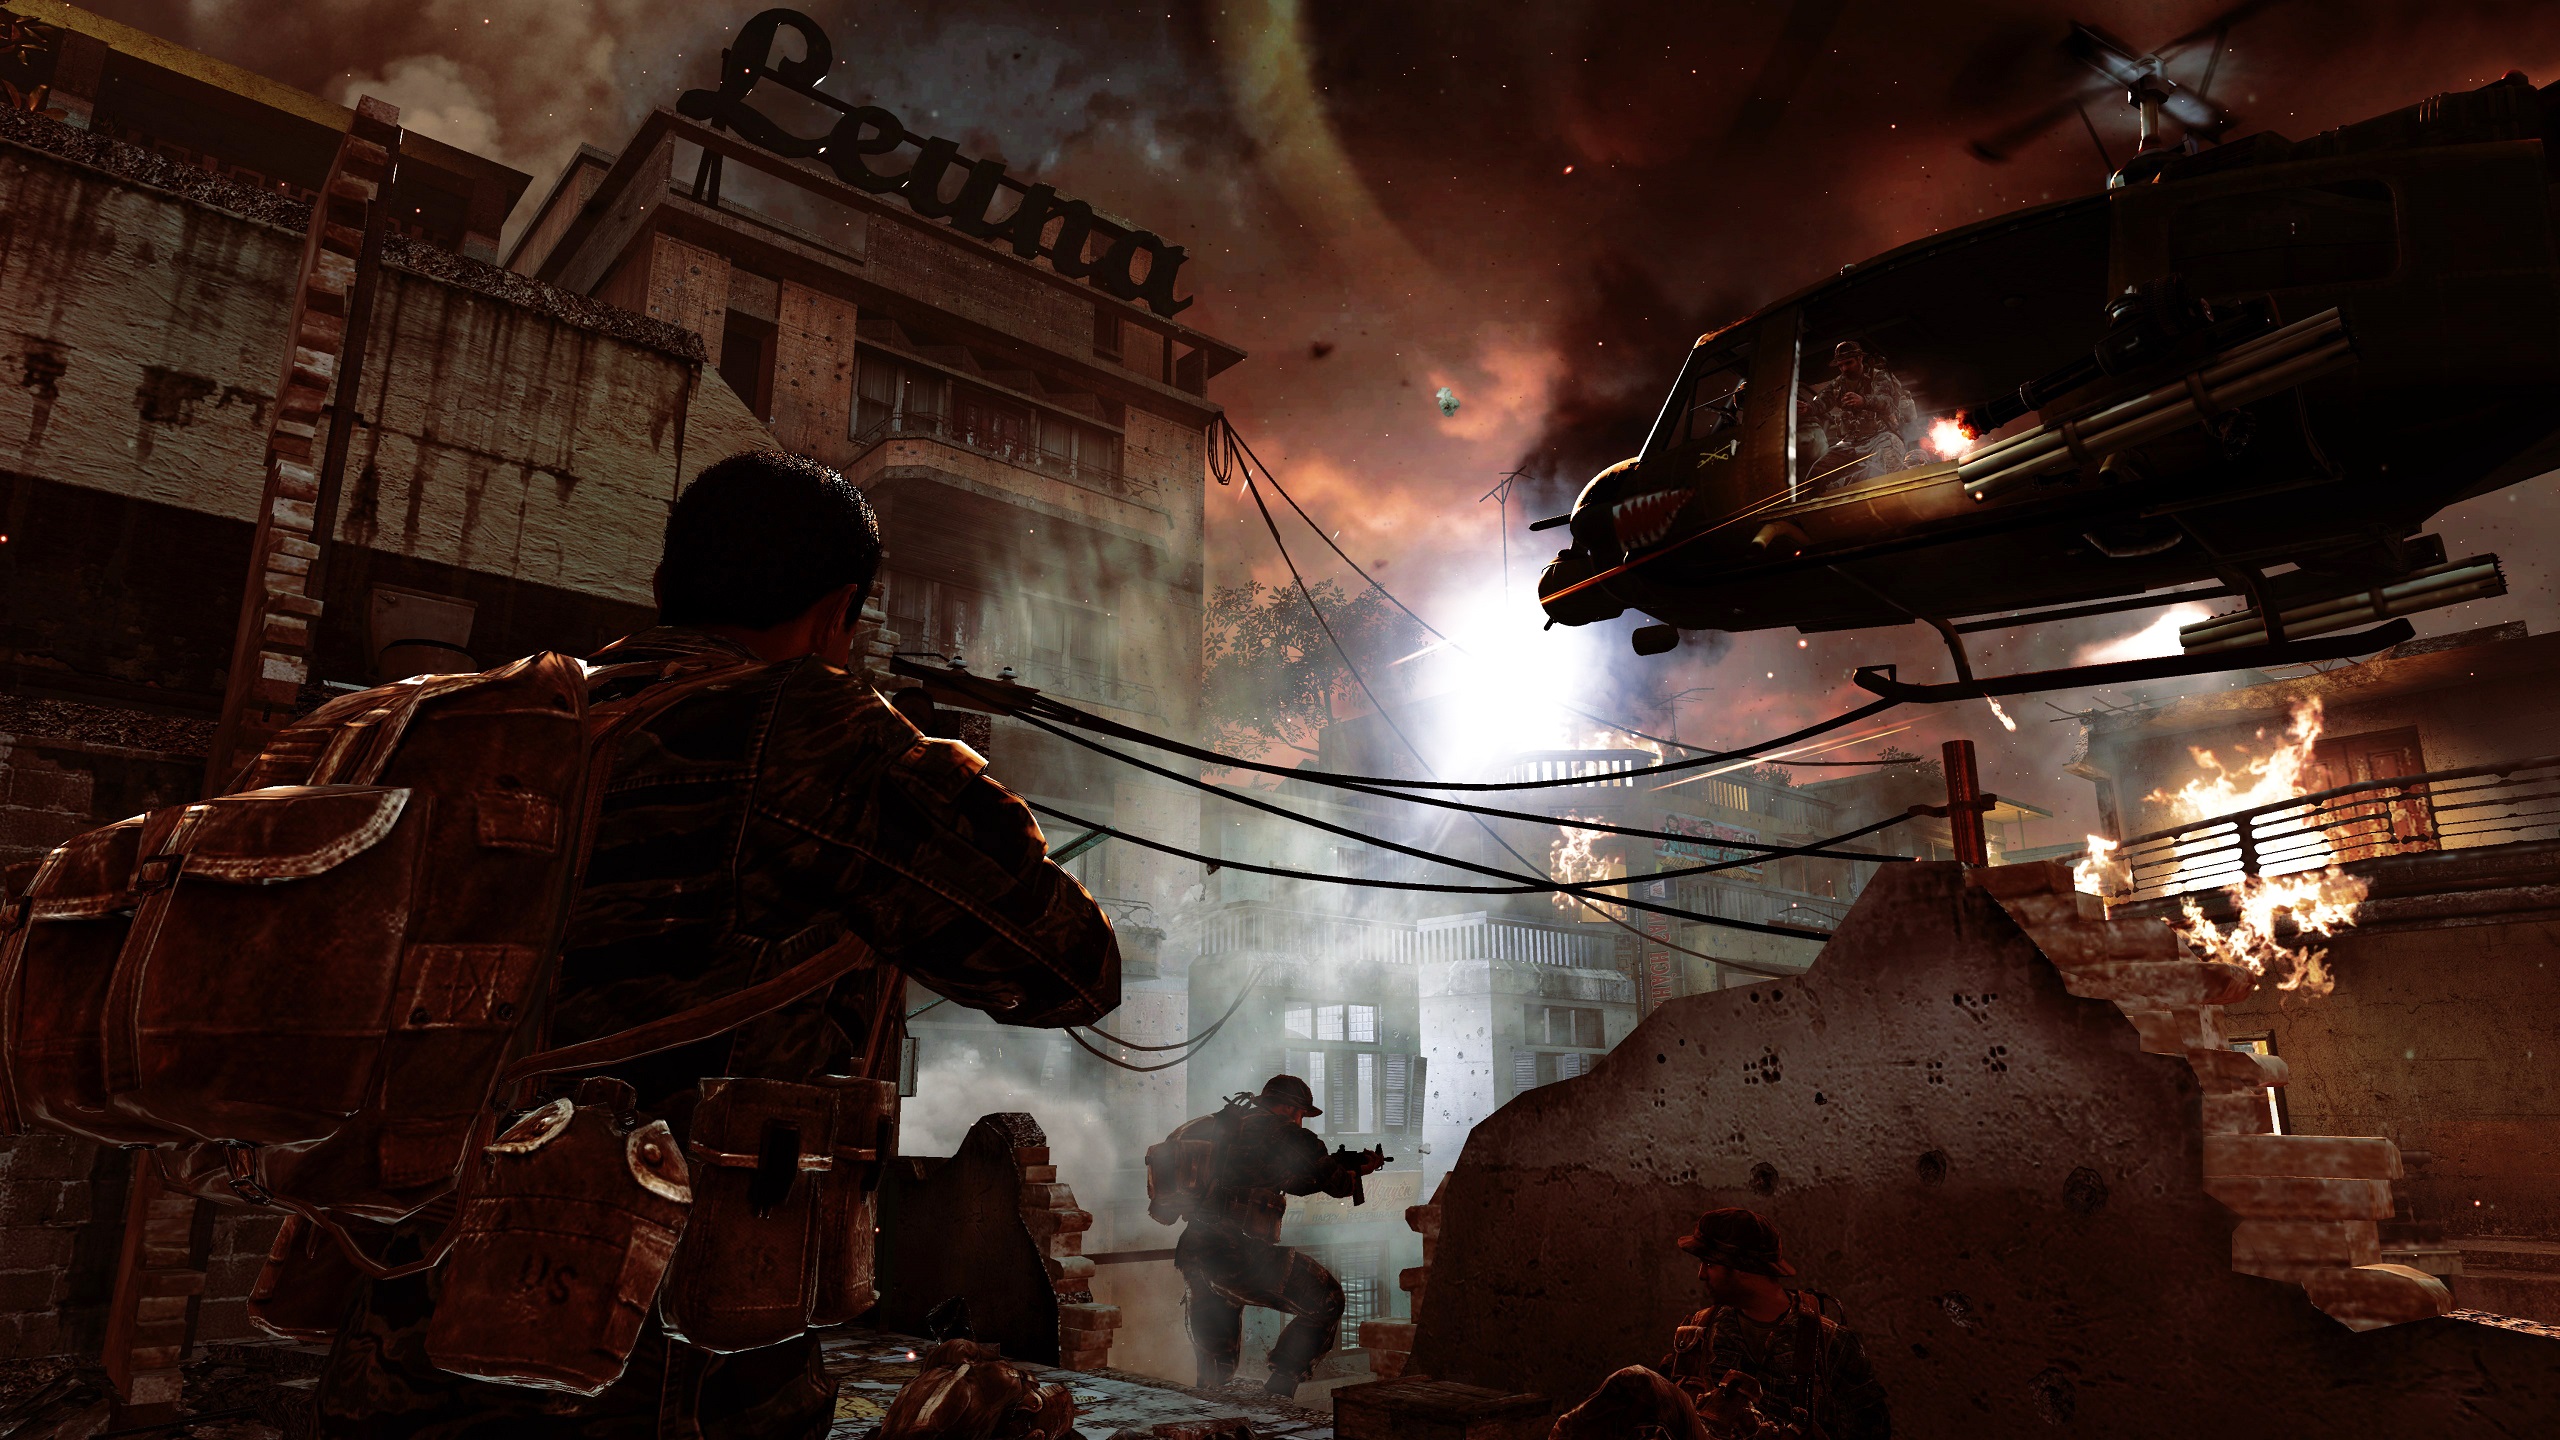 Bedrijf Voorstel Reizende handelaar Call of Duty: Black Ops PS3 Cheats - GameRevolution